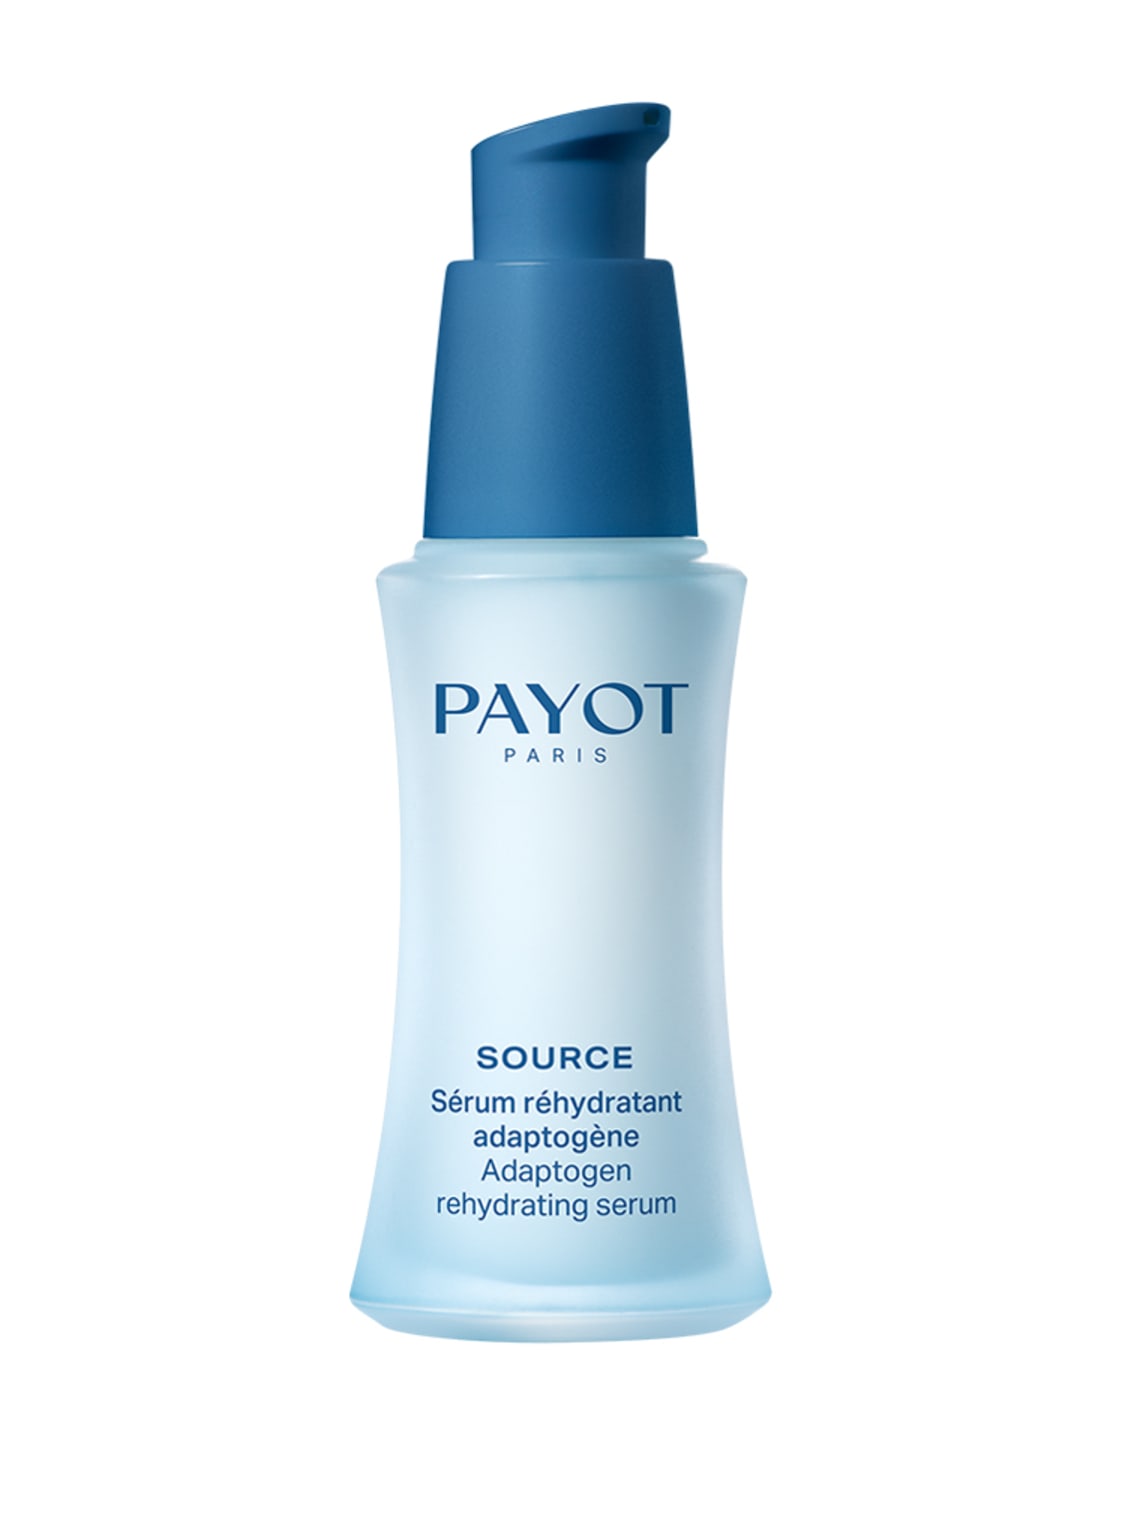 Payot Source Adaptogen Rehydrating Serum 30 ml von PAYOT